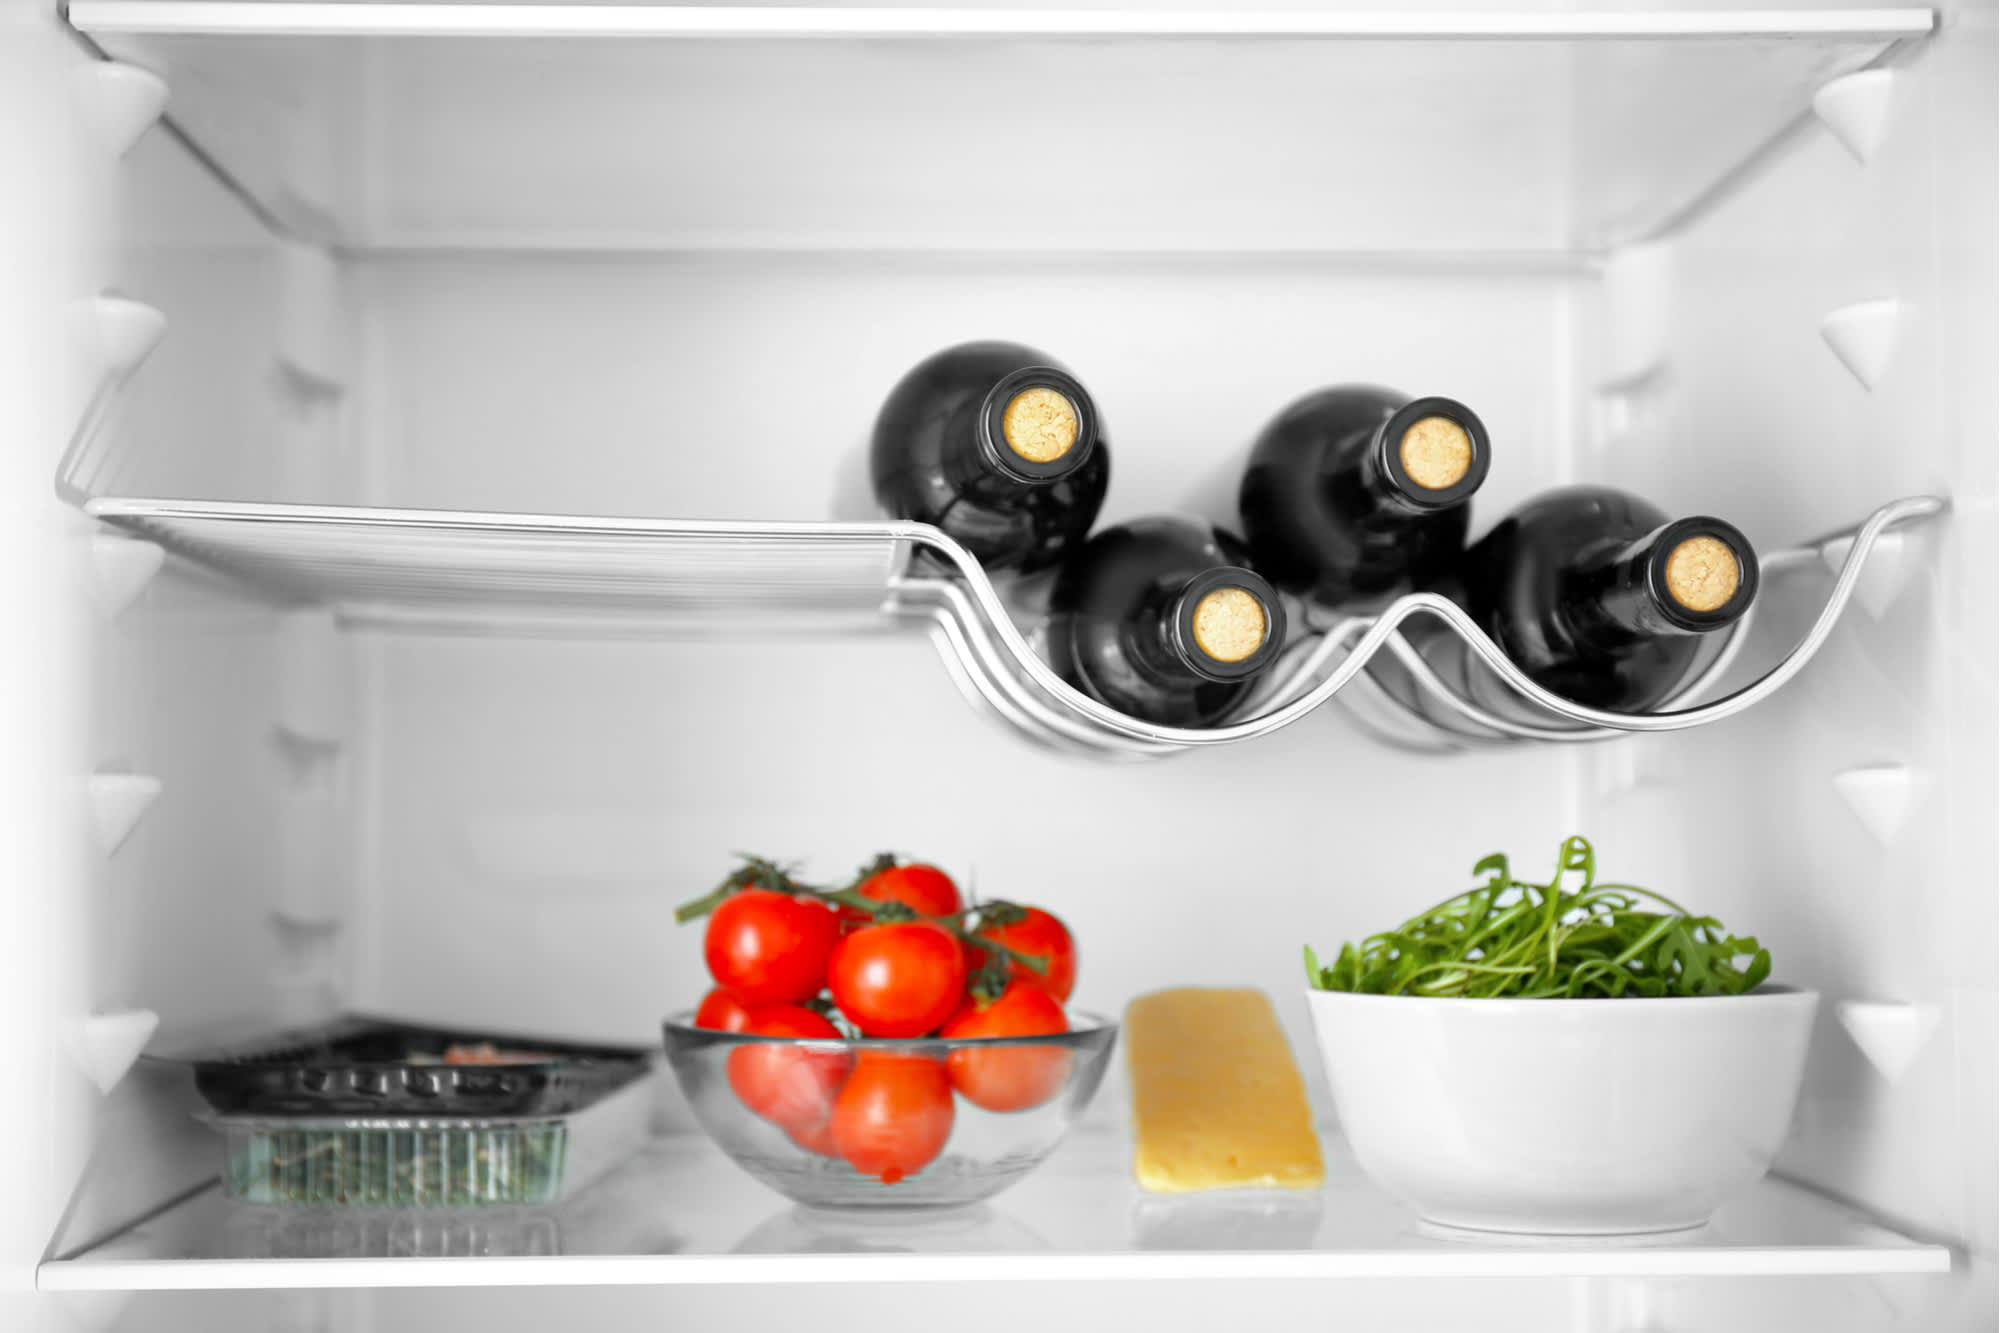 https://cdn.apartmenttherapy.info/image/upload/v1592403365/at/living/wine-in-fridge-rack-stock.jpg